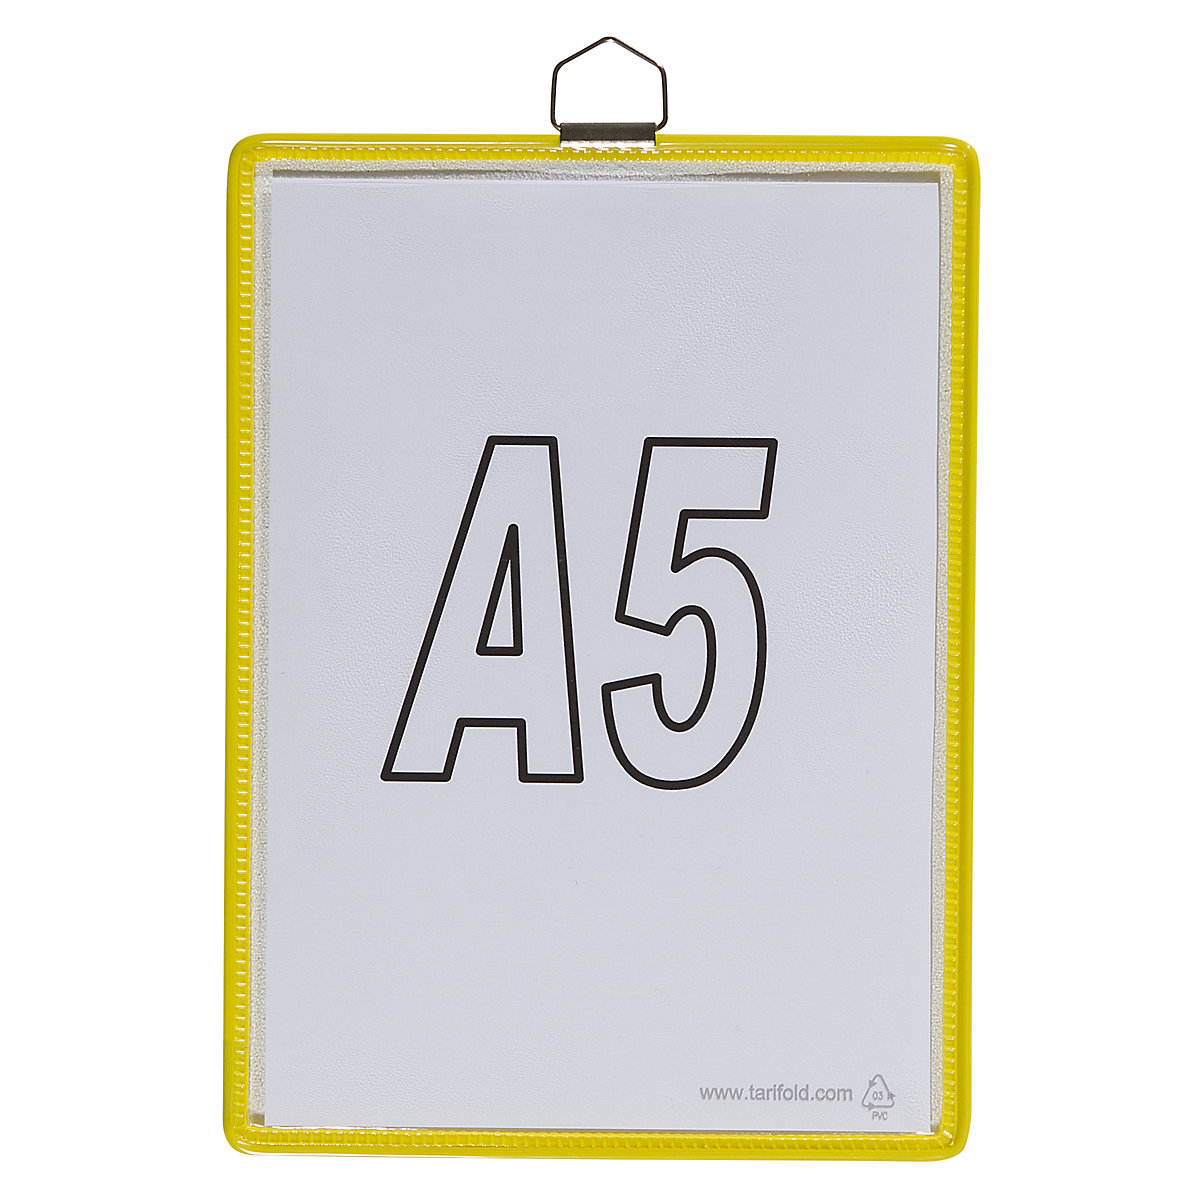 Pochette transparente à accrocher – Tarifold, pour format A5, coloris jaune, lot de 10-5